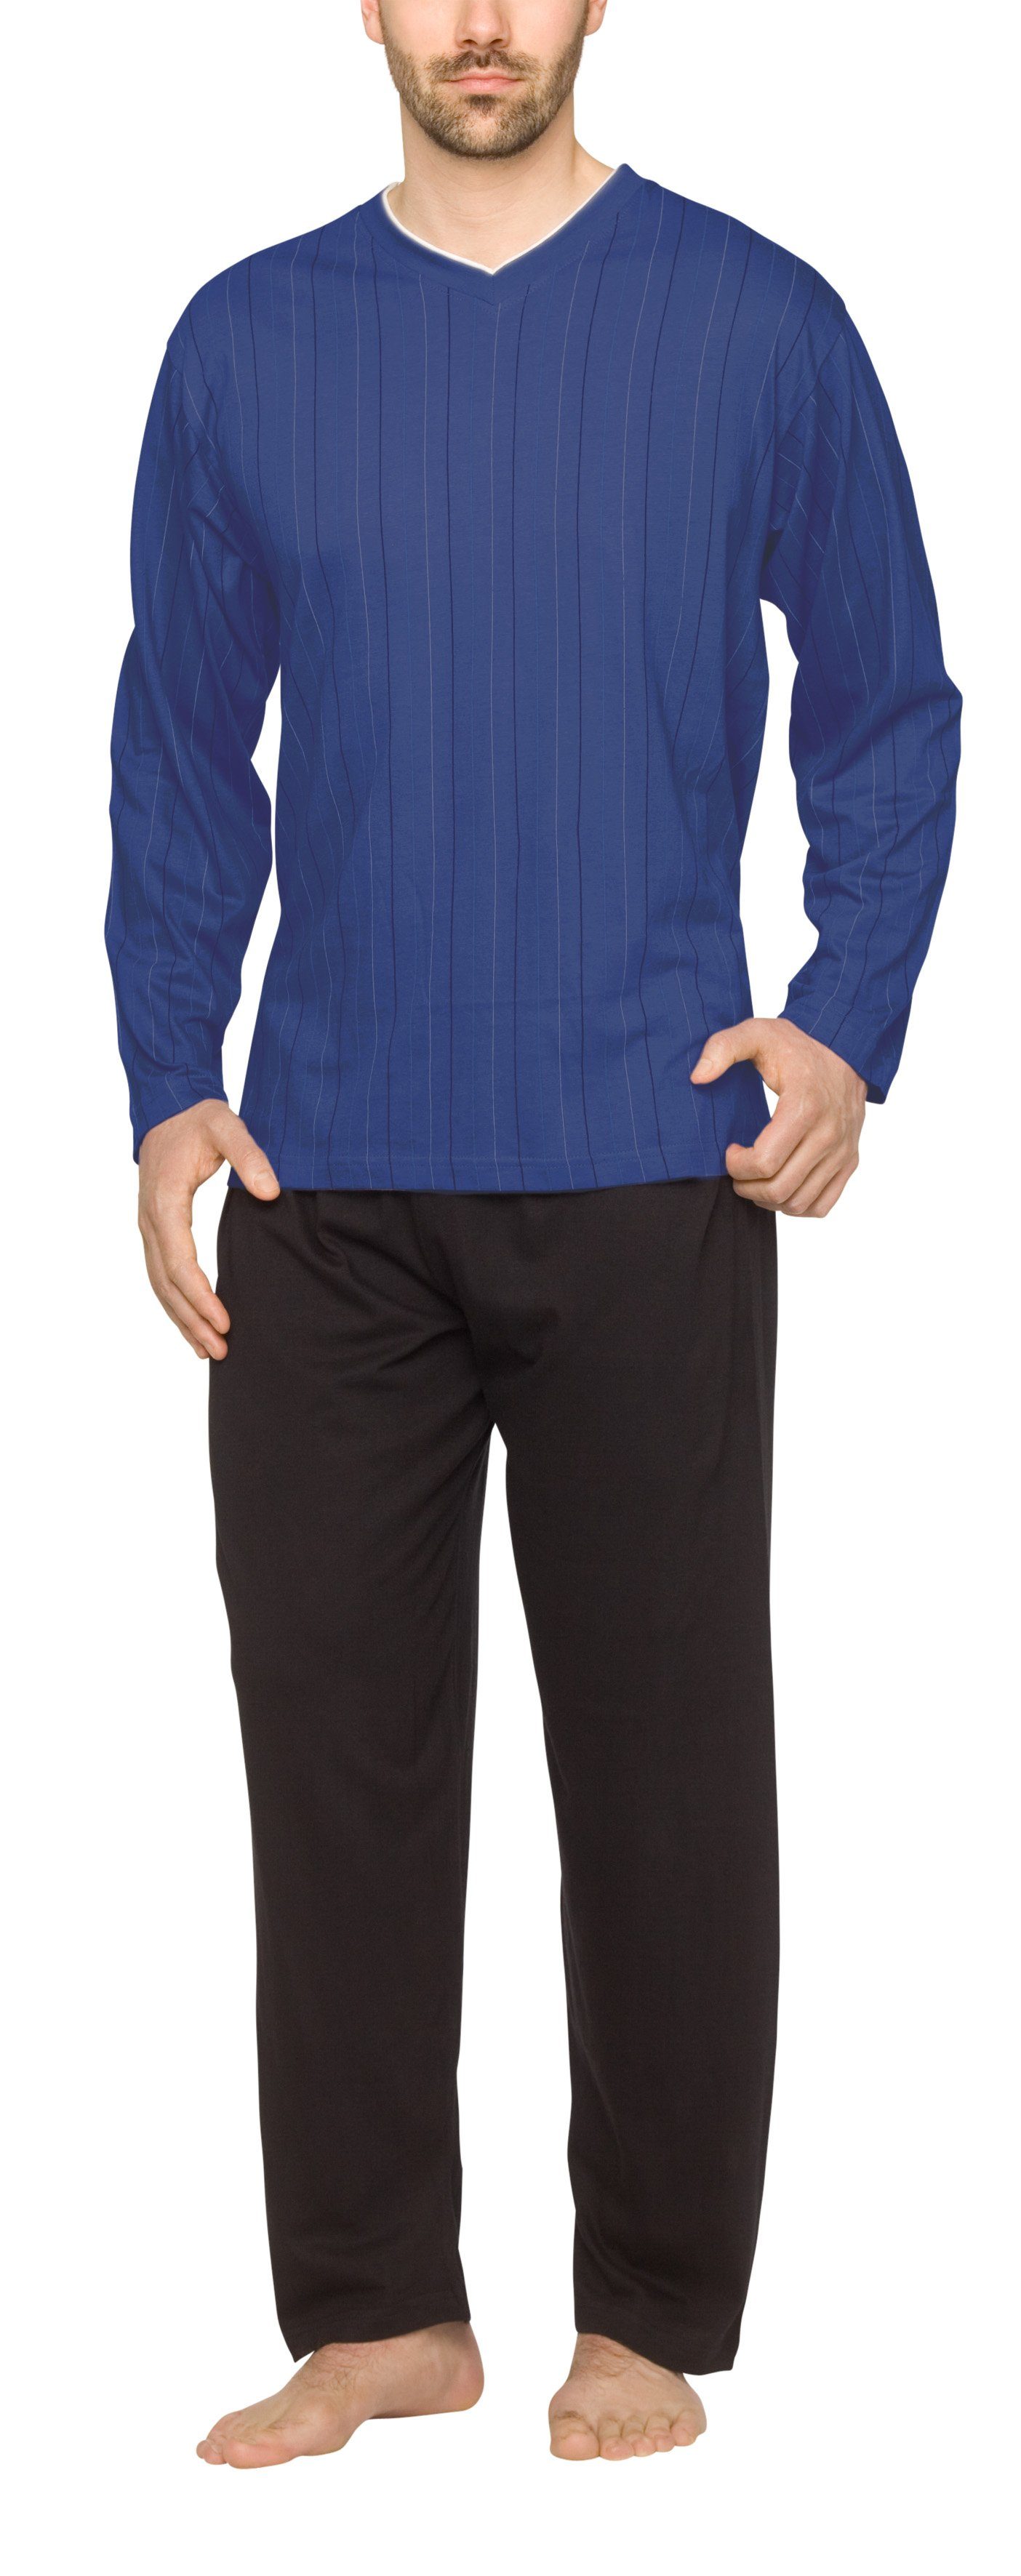 Moonline Pyjama Herren Schlafanzug lang aus 100% Baumwolle mit V-Ausschnitt und Streifen-Design Streifen-Druck auf blau